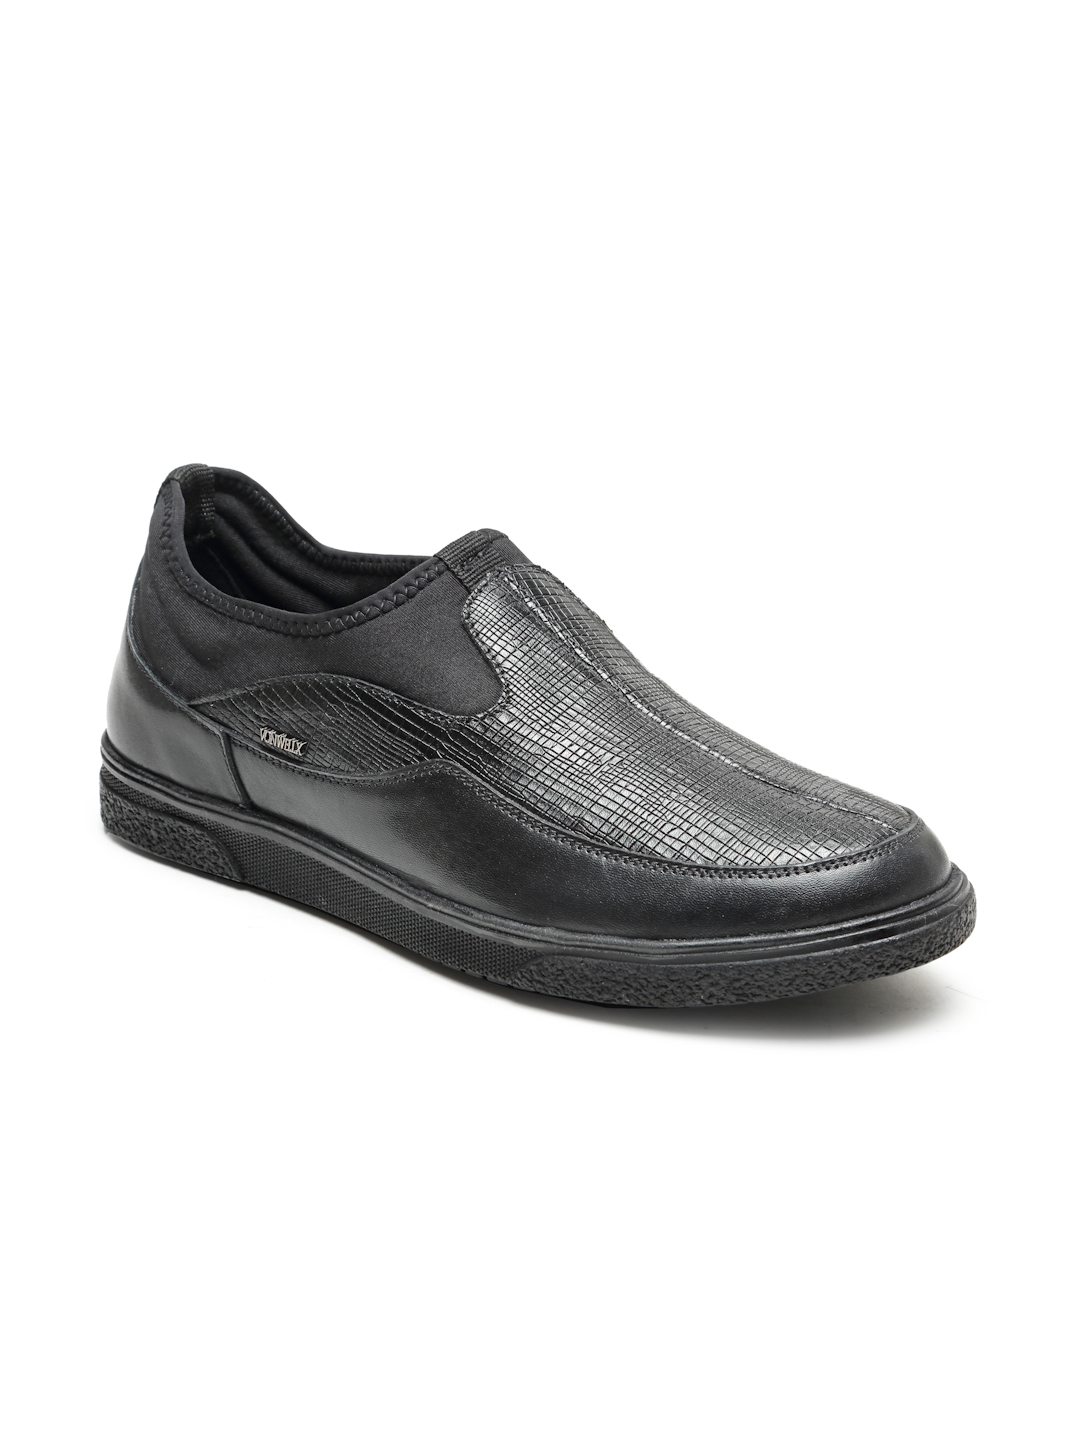 Buy Von Wellx Germany Comfort Men's Black Casual Loafers Everett Online in Noida